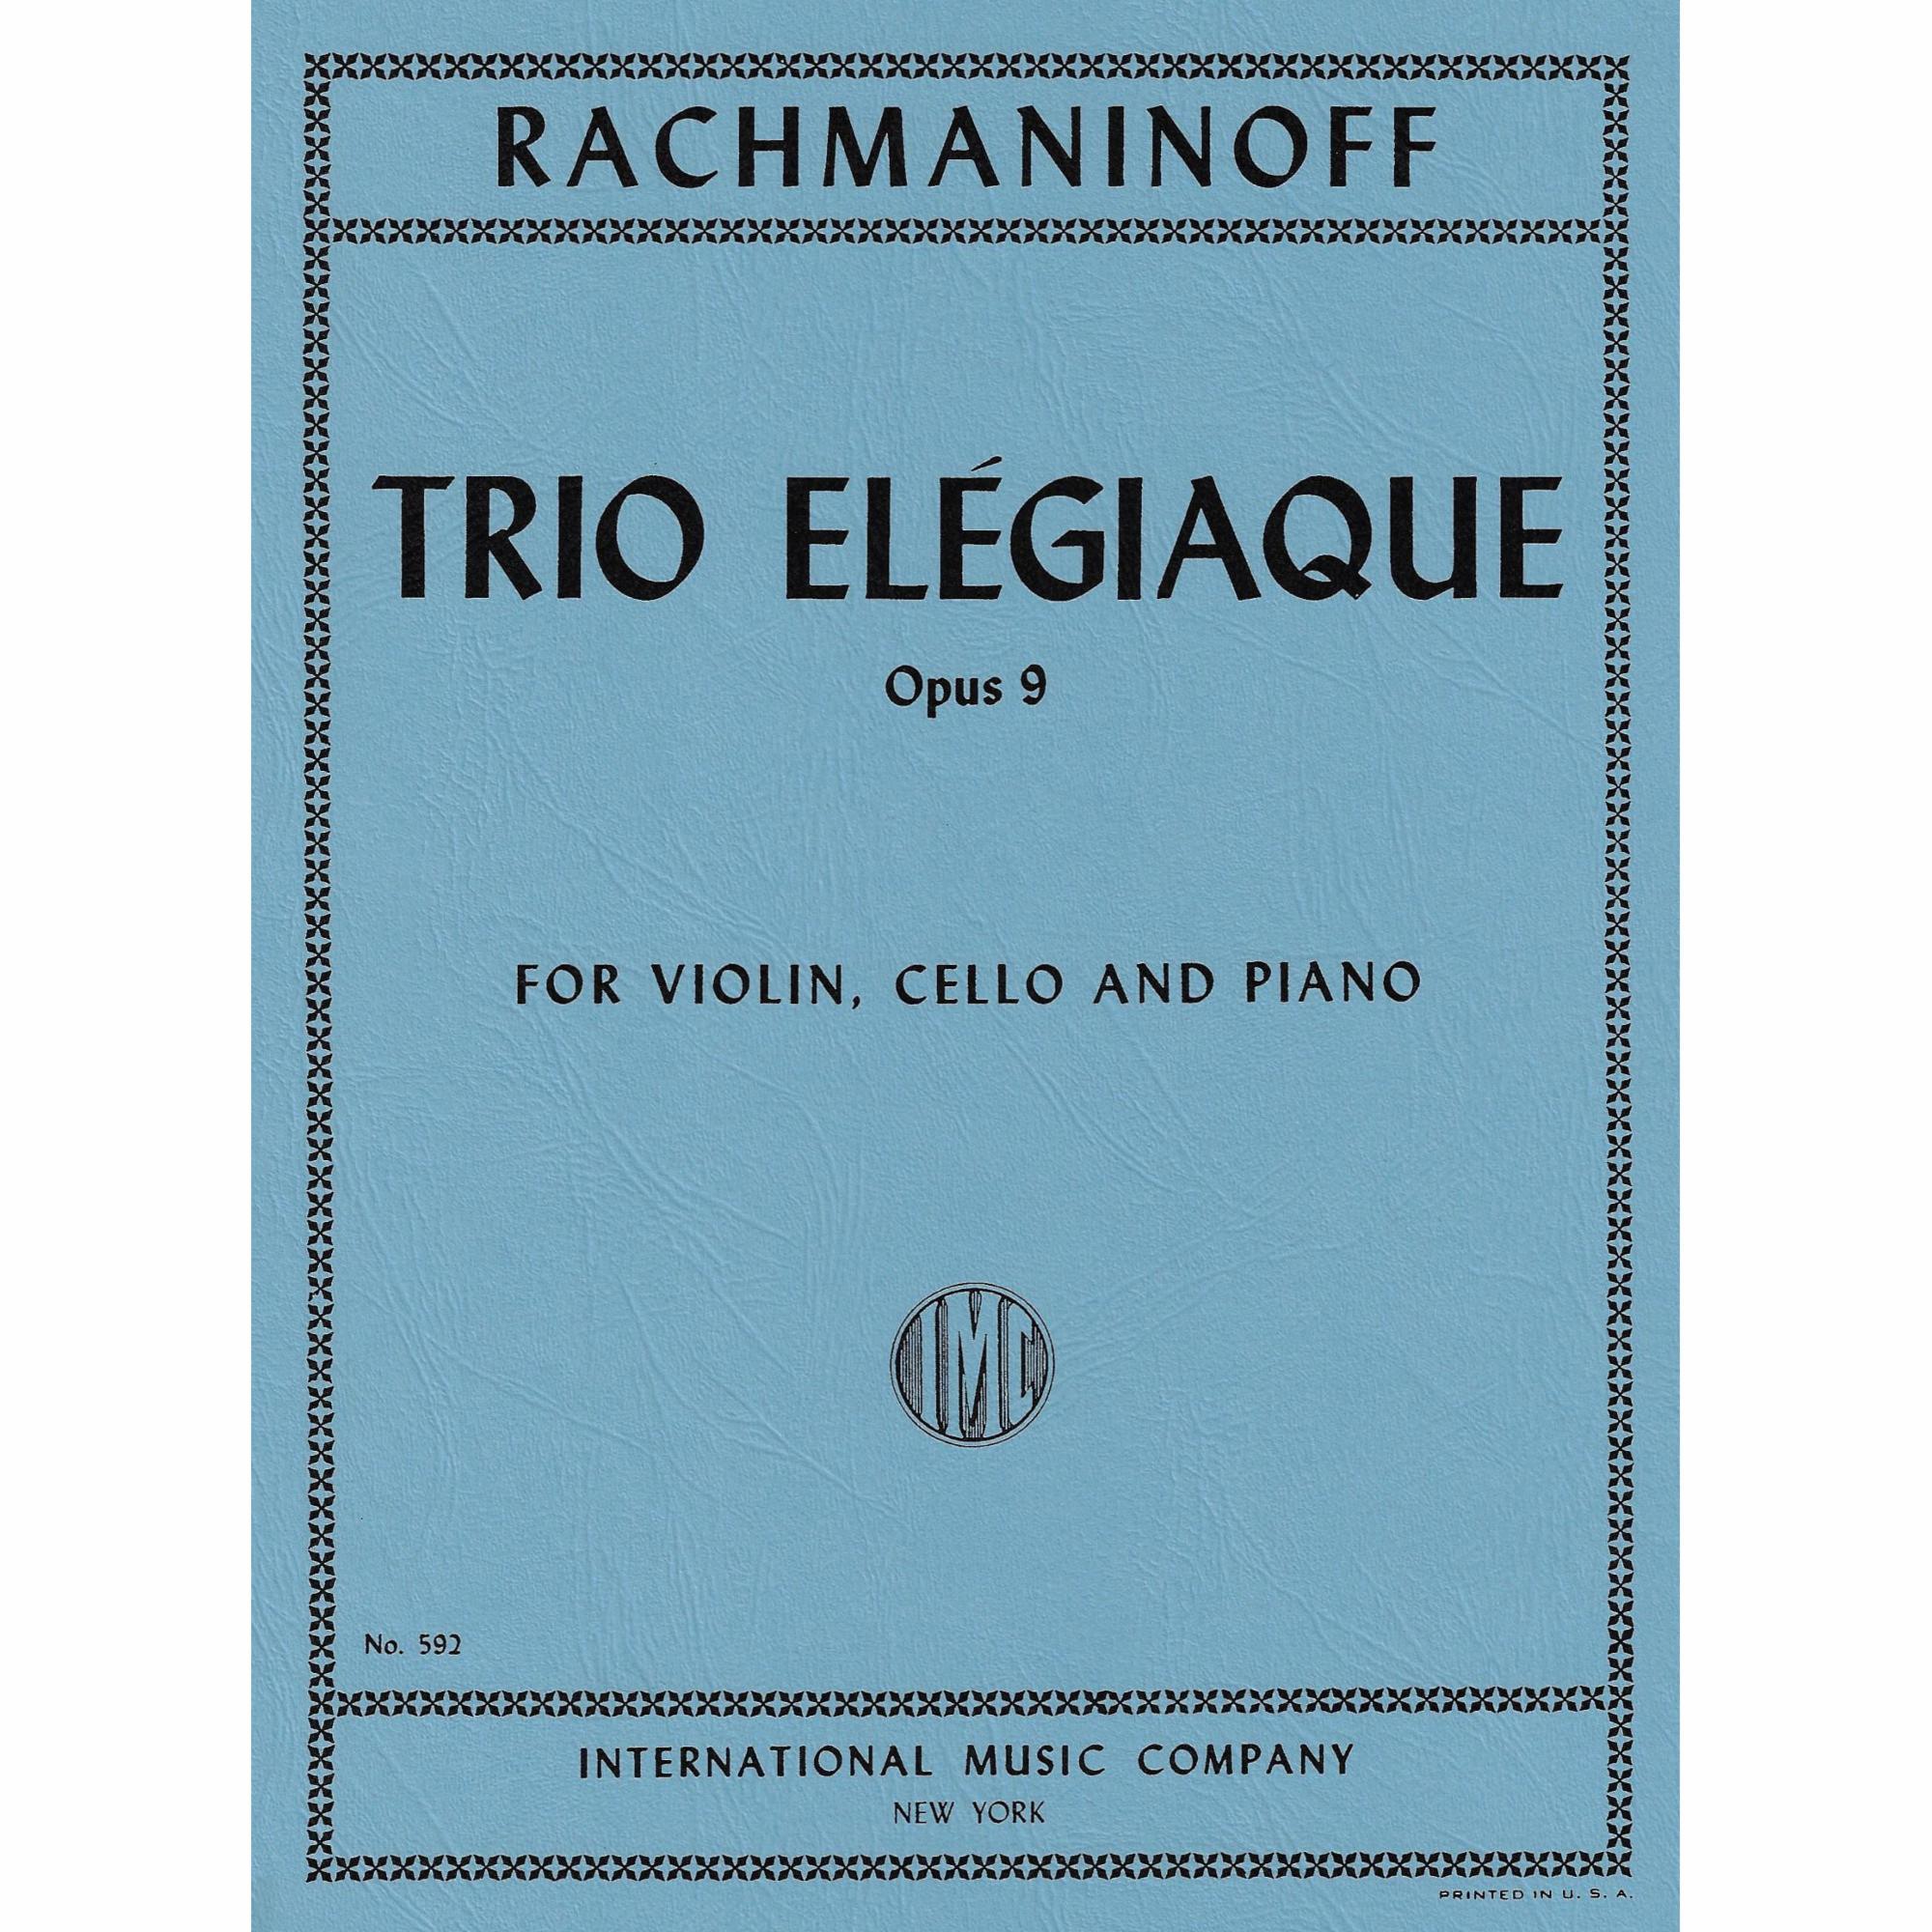 Rachmaninoff -- Trio Elegiaque, Op. 9